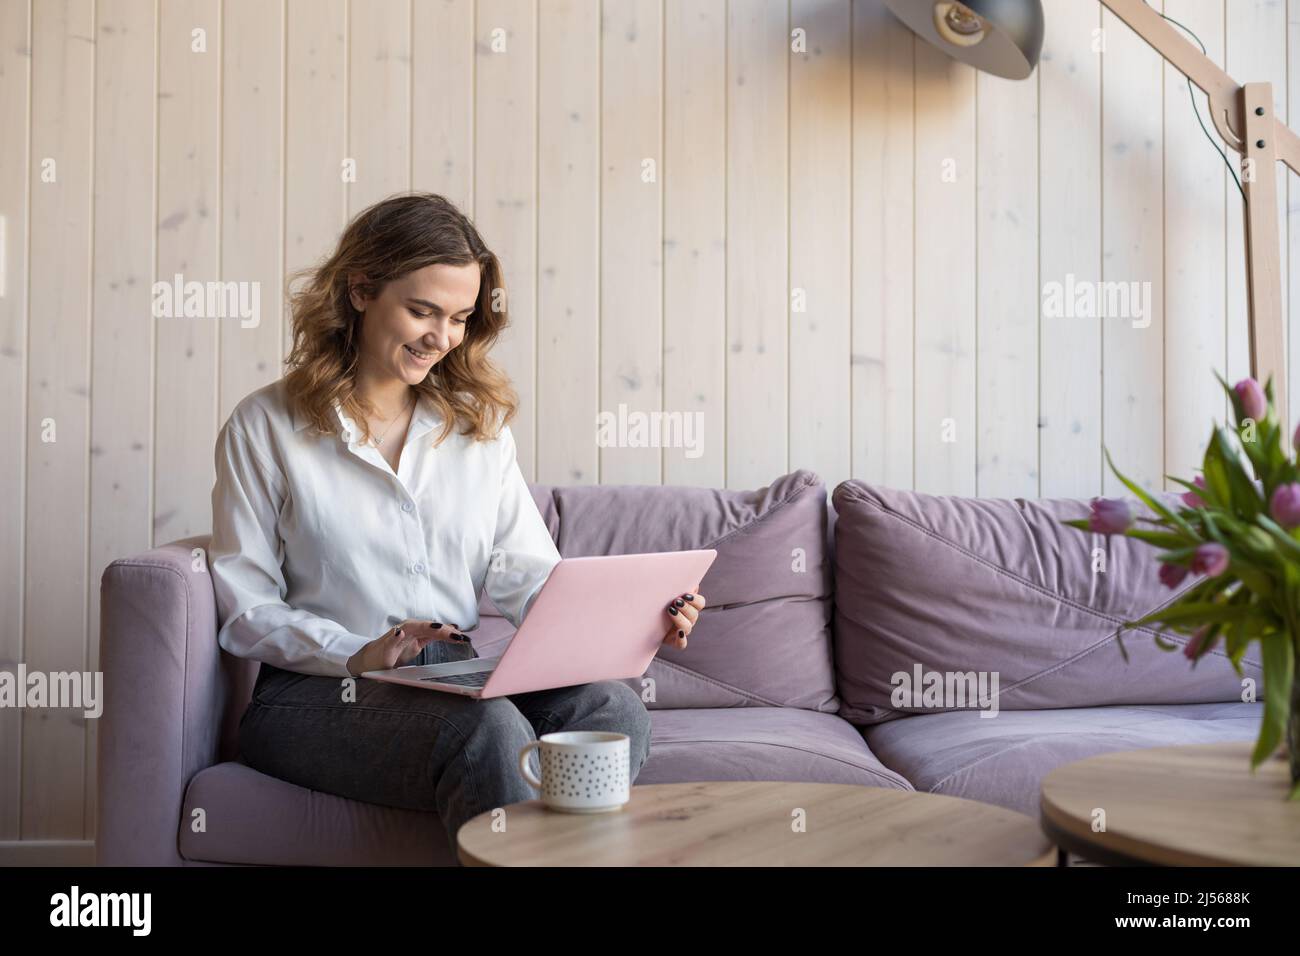 Porträt einer lächelnden Frau, die auf einem rosa Laptop auf einem weichen violetten Sofa in legerer Kleidung neben dem Tisch mit einer Tasse Kaffee sitzt. Wohnzimmer in elegant Stockfoto